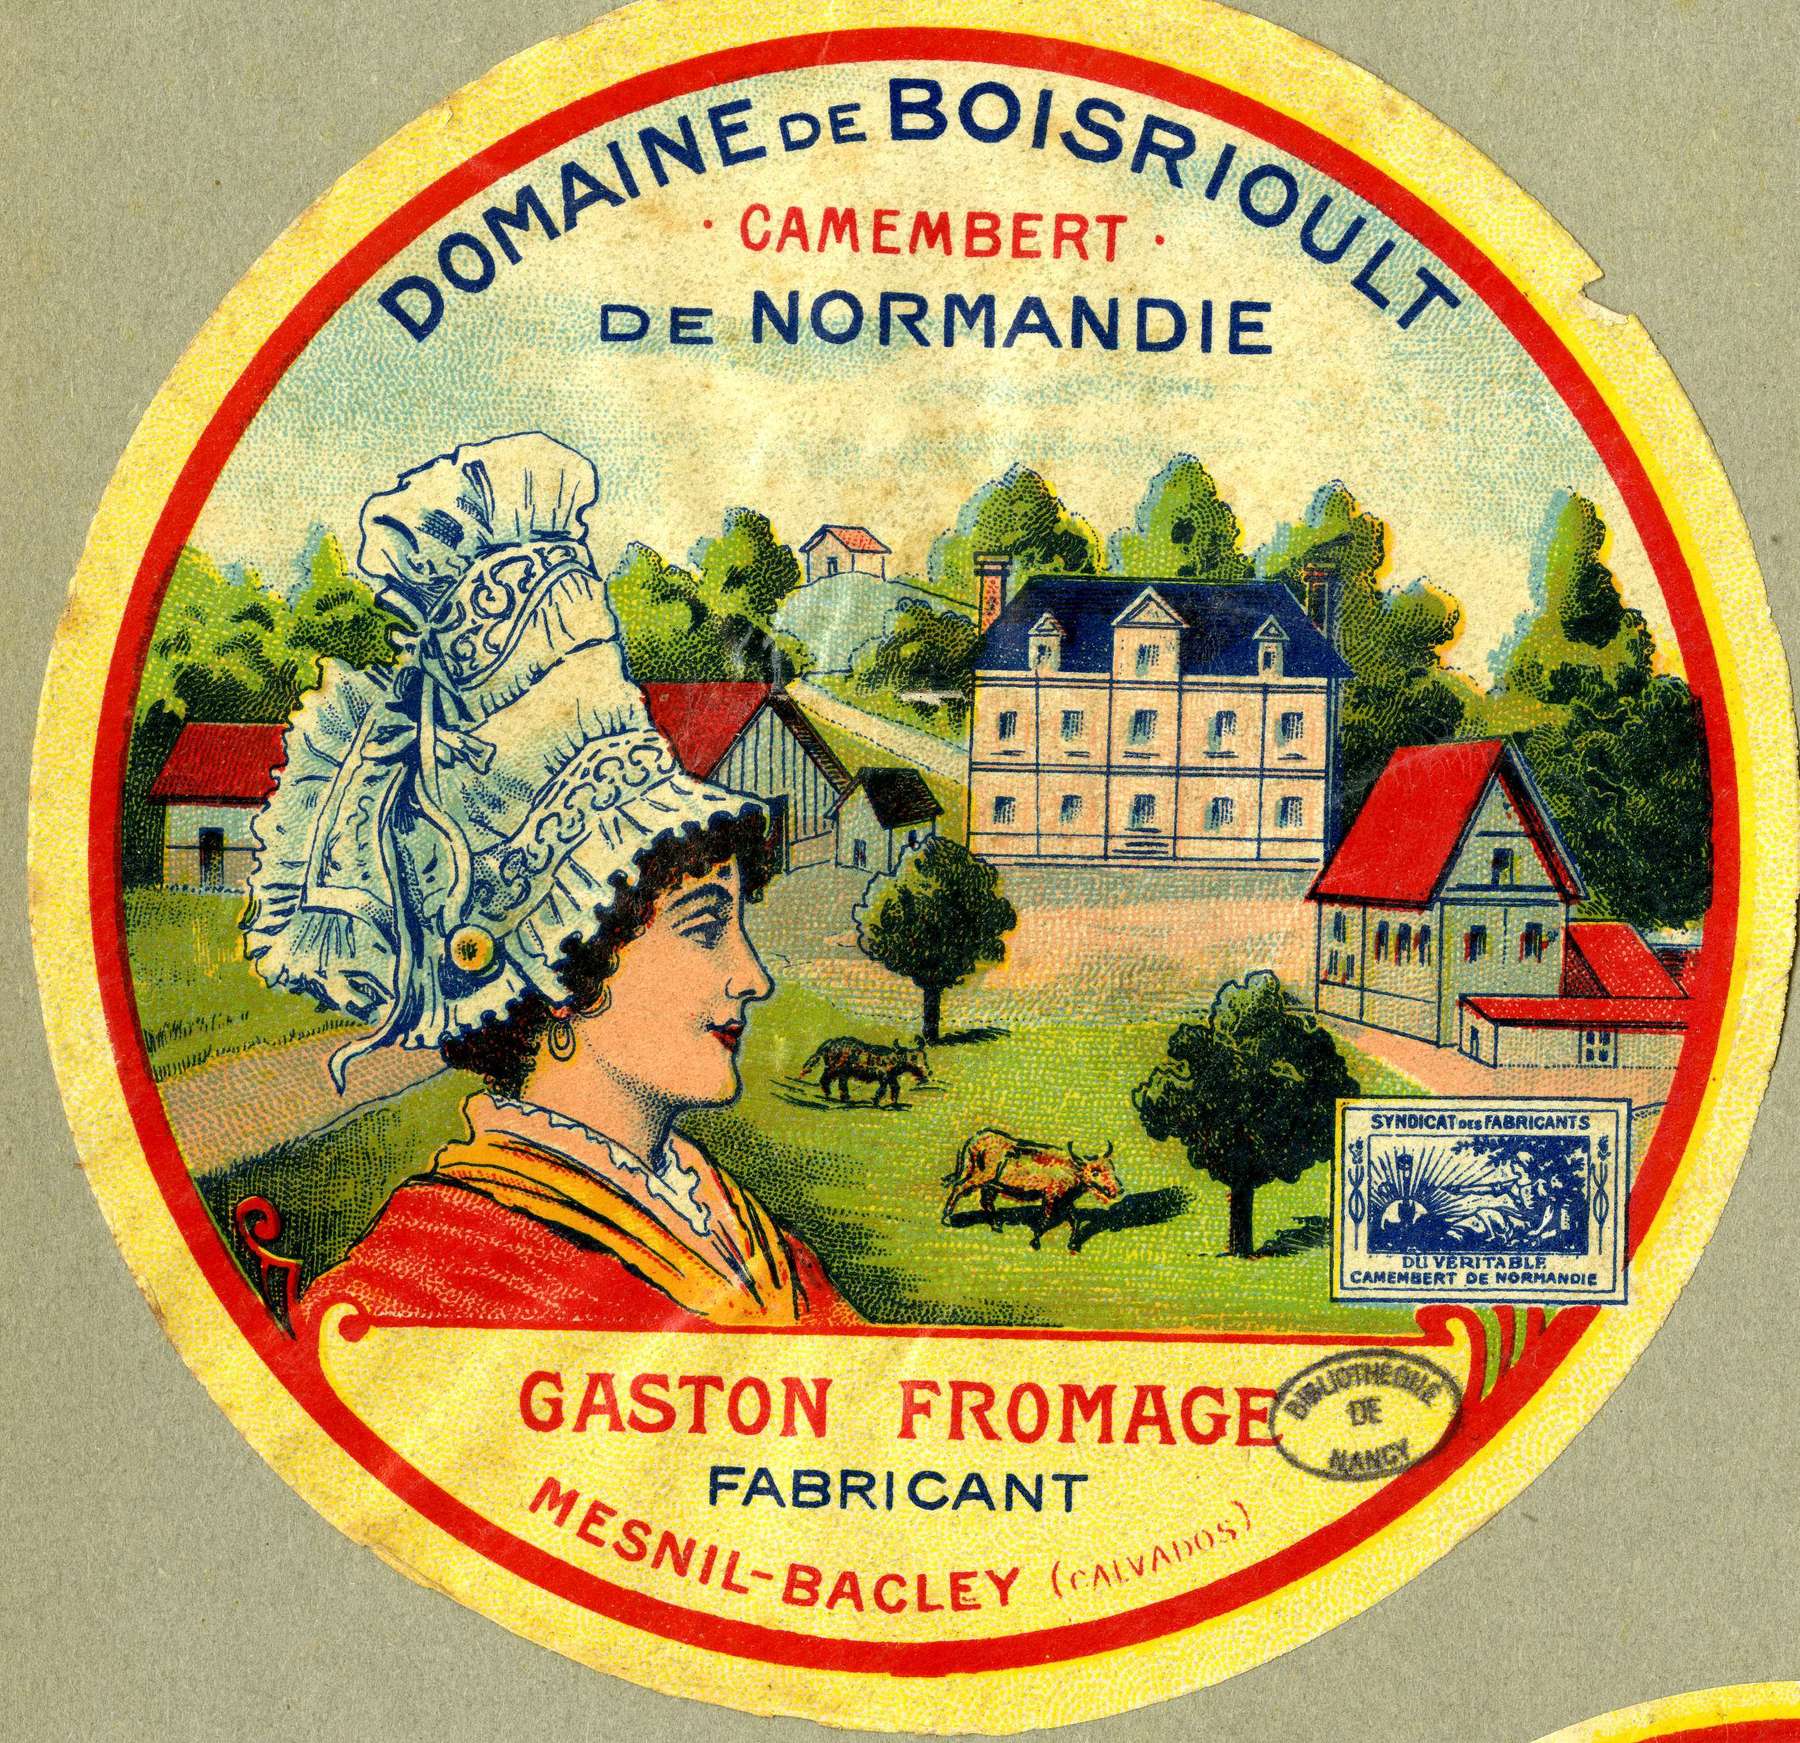 Contenu du Camembert de Normandie